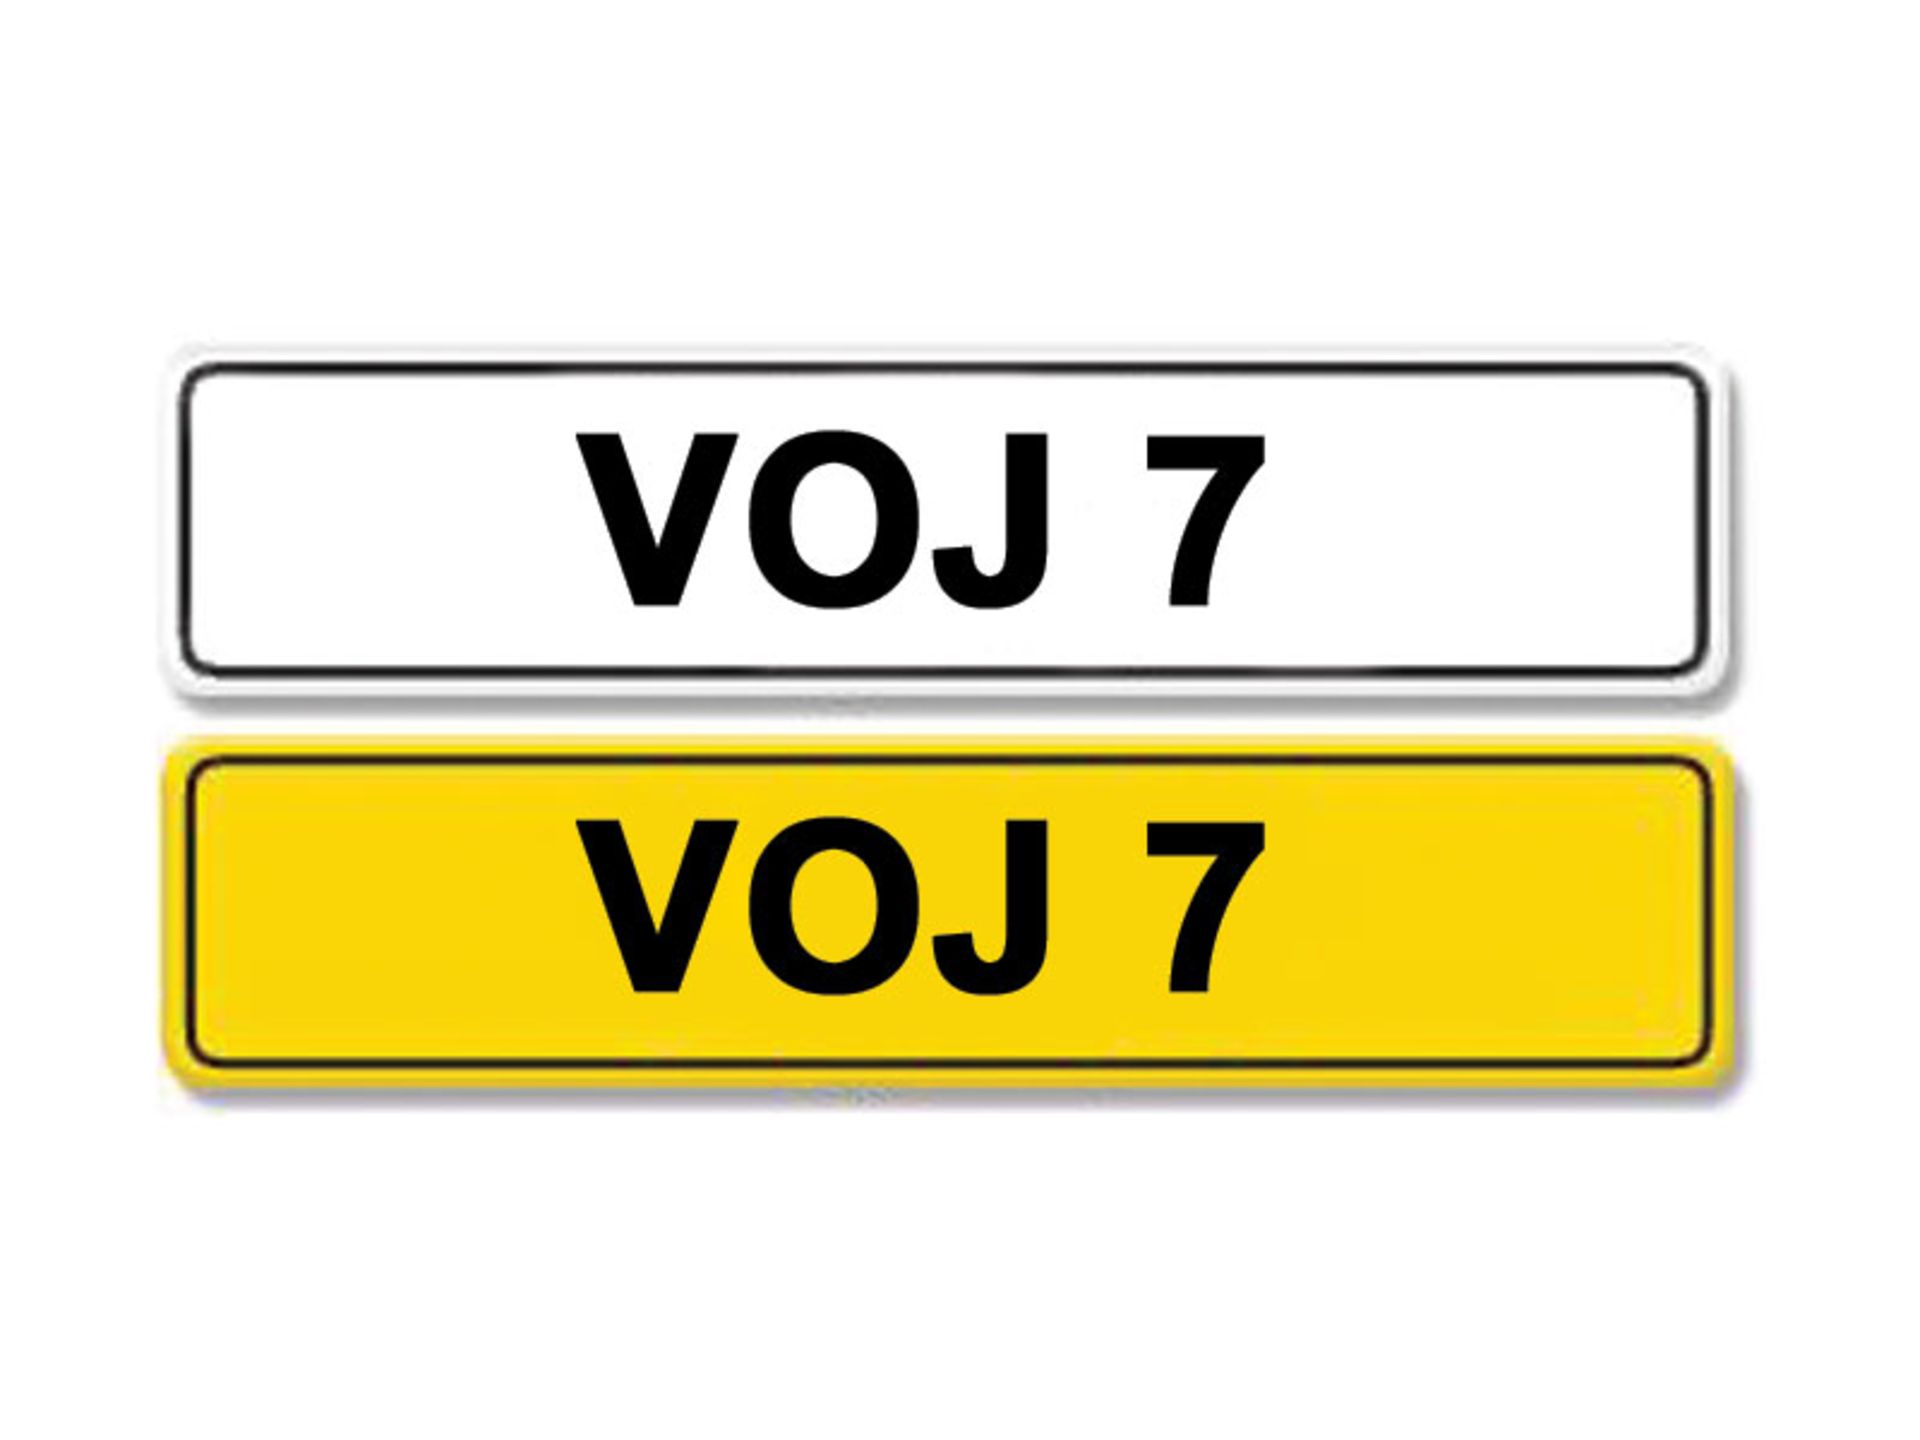 Registration Number VOJ 7